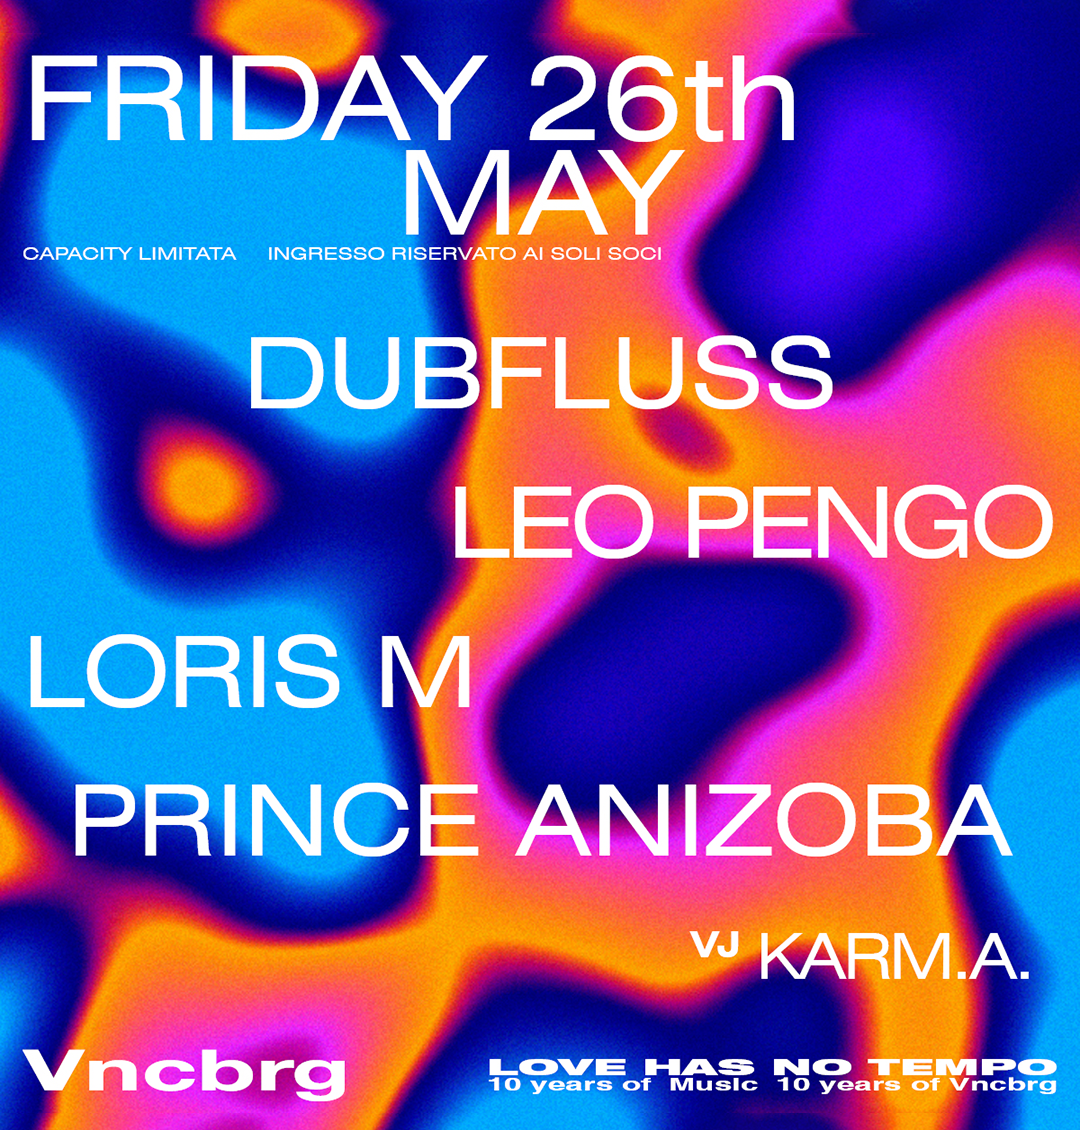 Vncbrg with Dubfluss, Leo Pengo, Loris M, Prince Anizoba - Página frontal